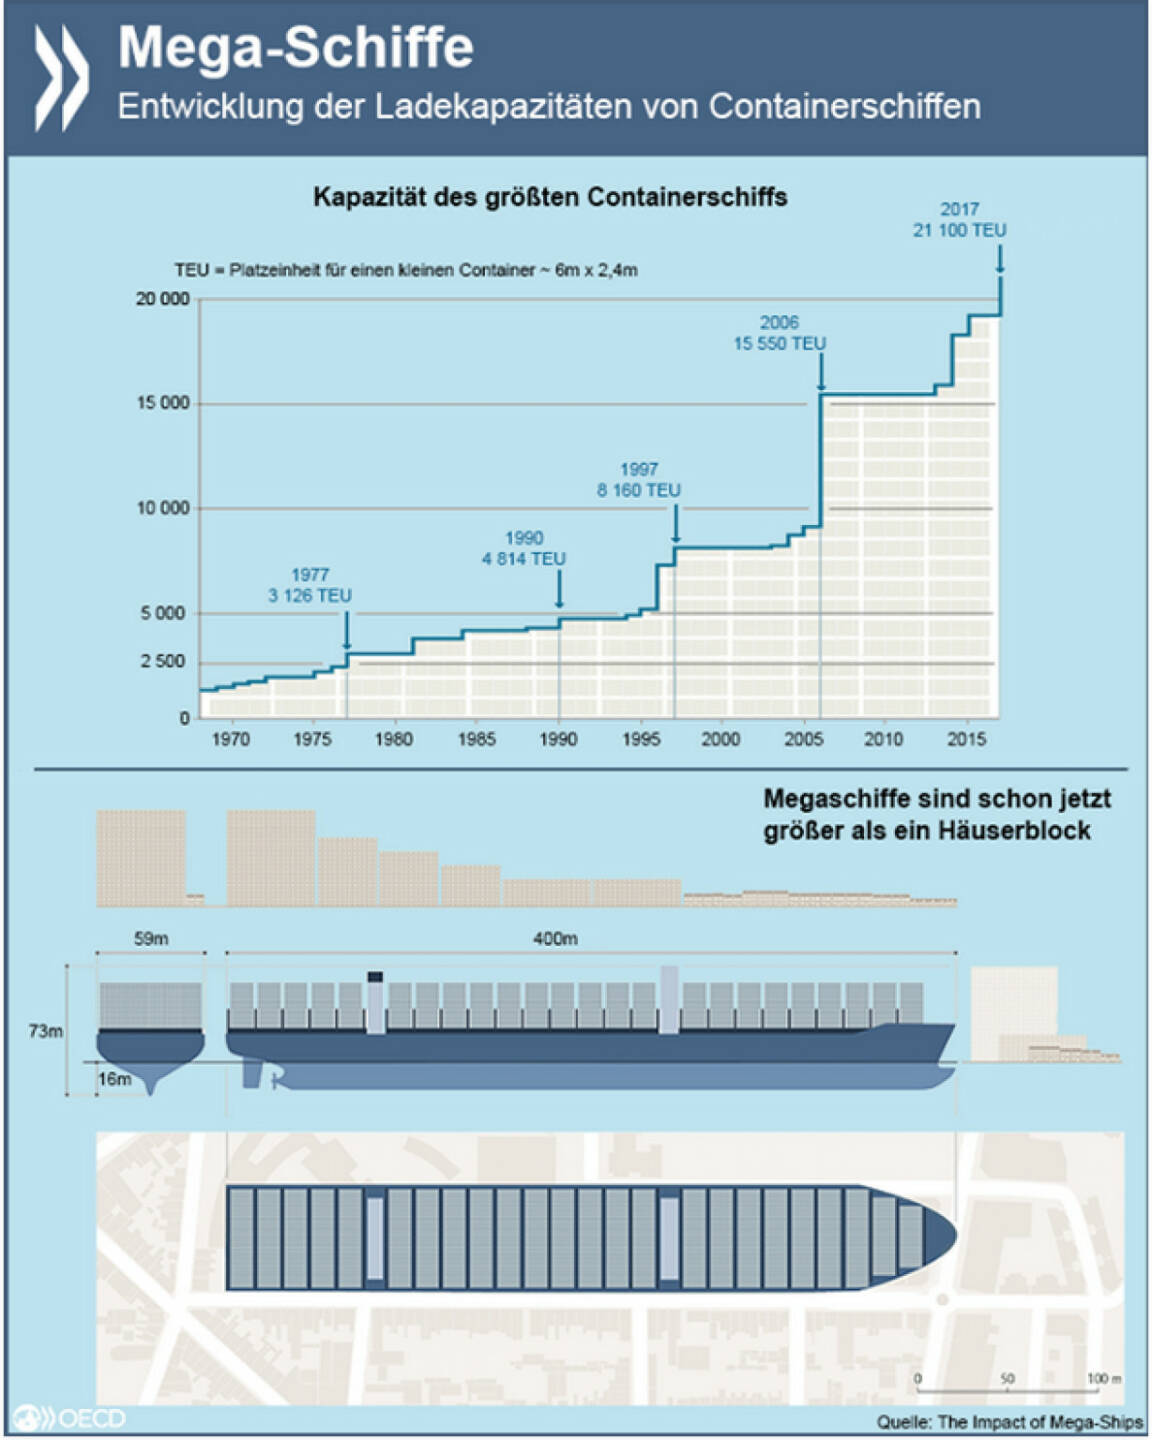 Mega! Die Ladekapazitäten von Containerschiffen haben sich in den vergangenen zehn Jahren verdoppelt. Die Transportkosten sanken im gleichen Zeitraum um etwa ein Drittel. Noch größere Schiffe wären allerdings wenig effizient - die Infrastruktur (Brückenhöhe, Kanalbreite, Hafenanlagen) stößt schon heute an ihre Grenzen.
Wie Mega-Schiffe den weltweiten Warentransport verändern, erfahrt Ihr unter: http://bit.ly/1KWzRGL